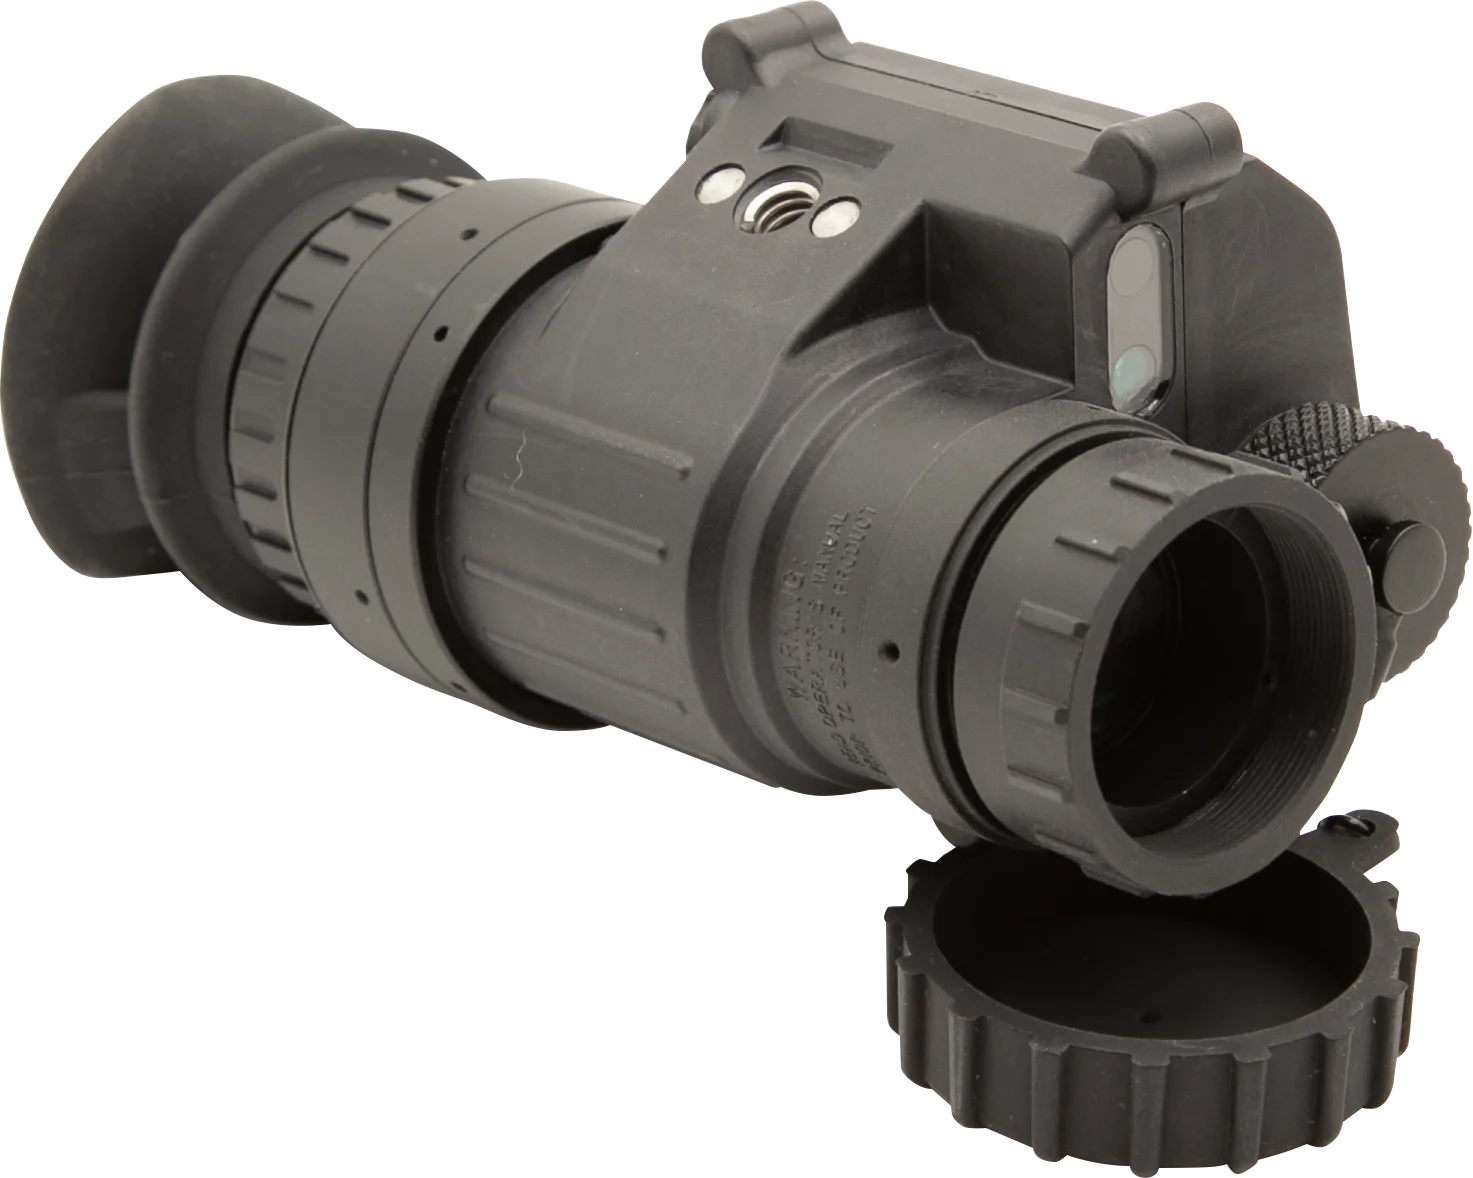 

Фабричный Тактический Телефон ночного видения монокулярный ИК цифровой очки ночного видения цифровое видение Ночное Видение военный